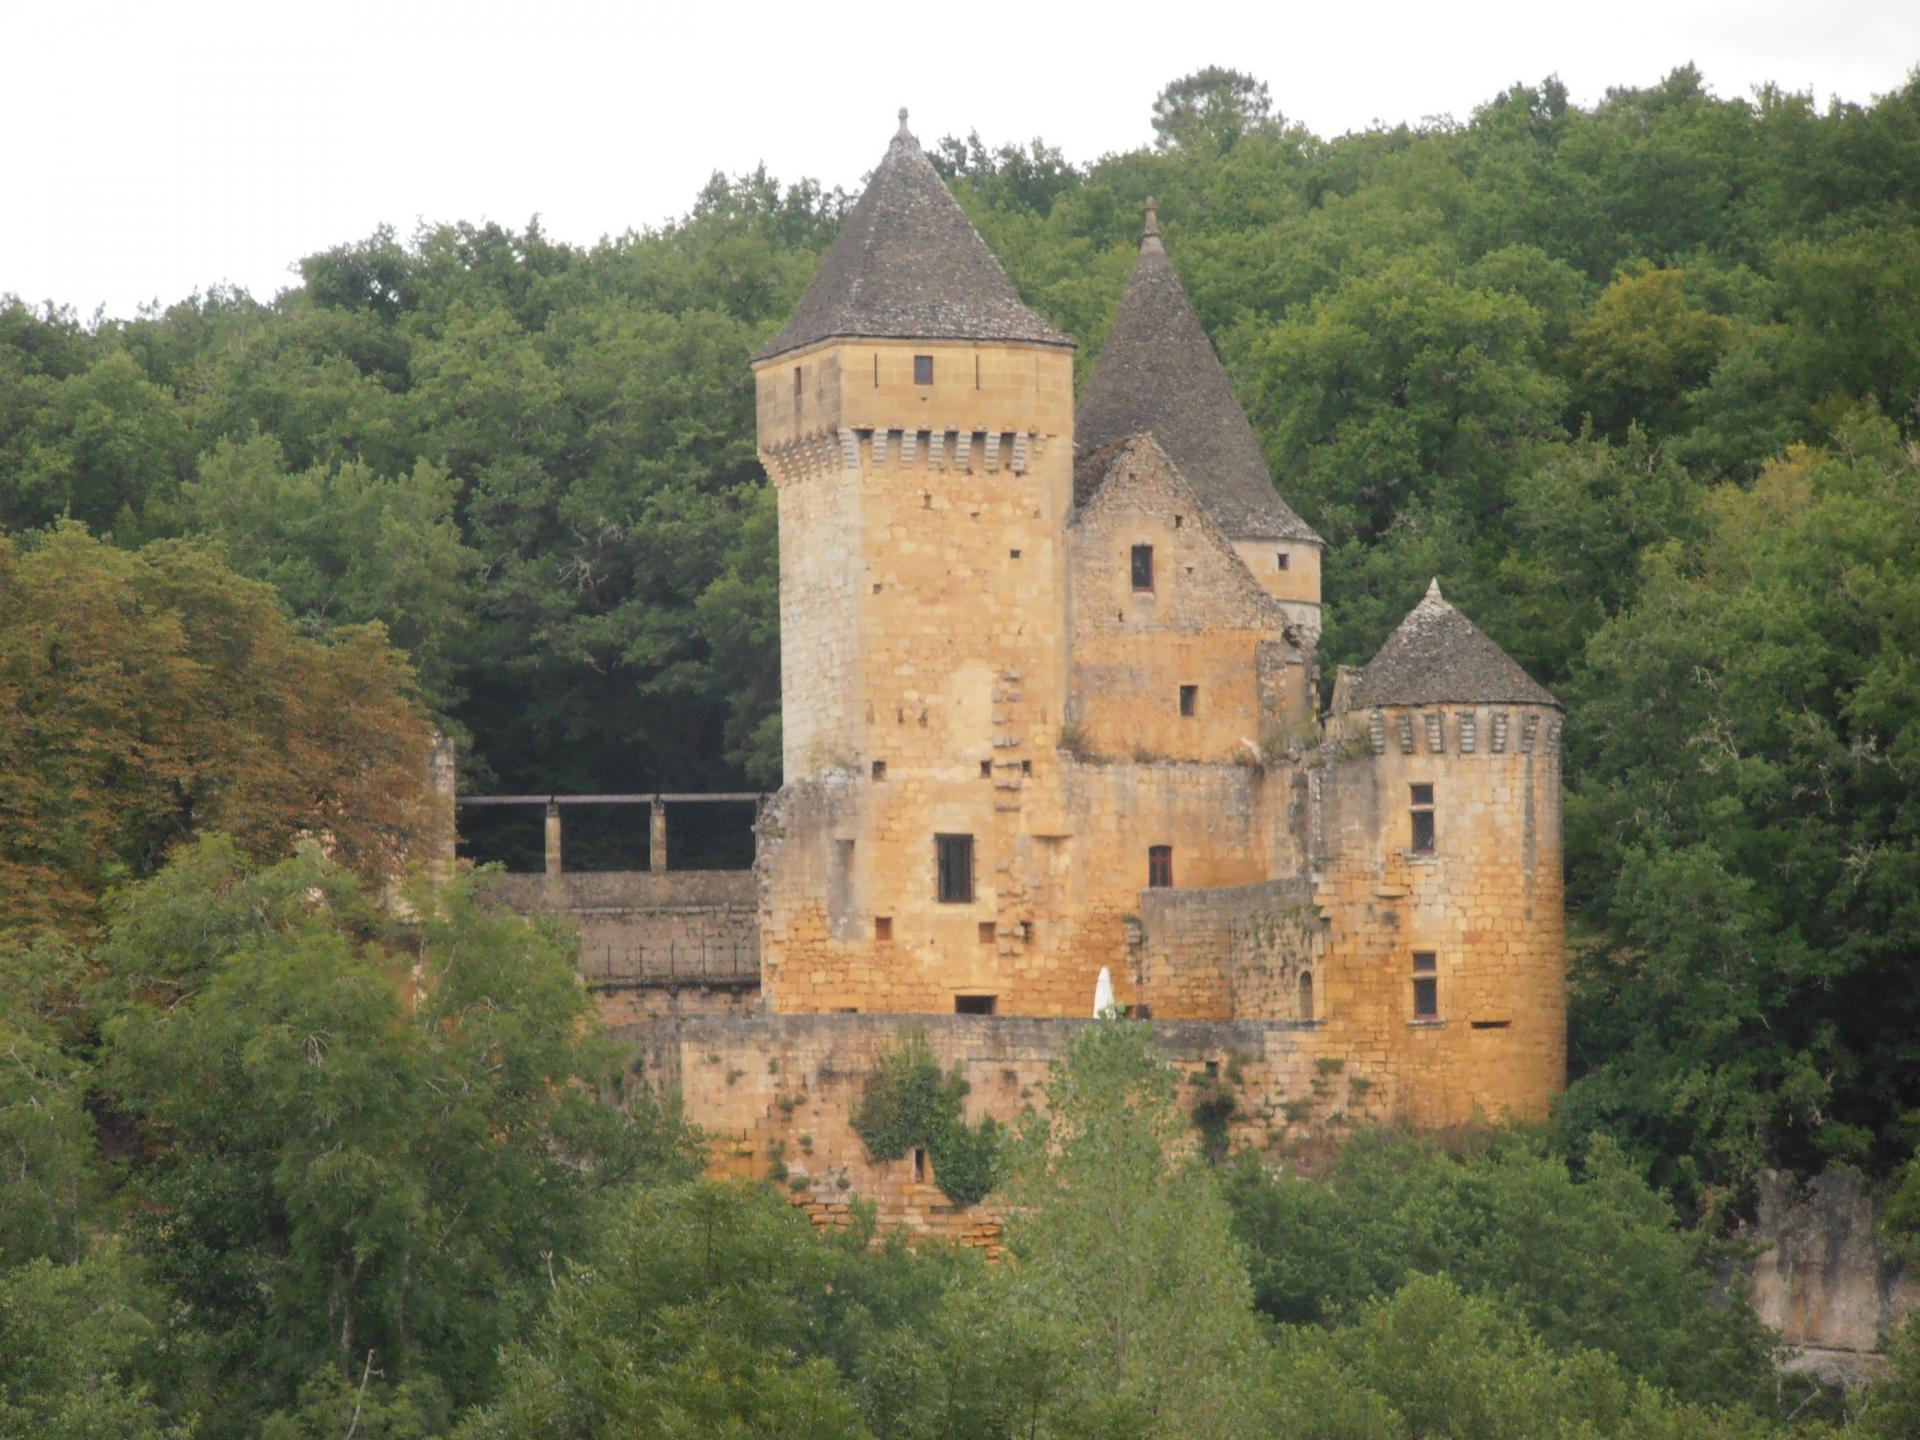 Chateau de Commarque